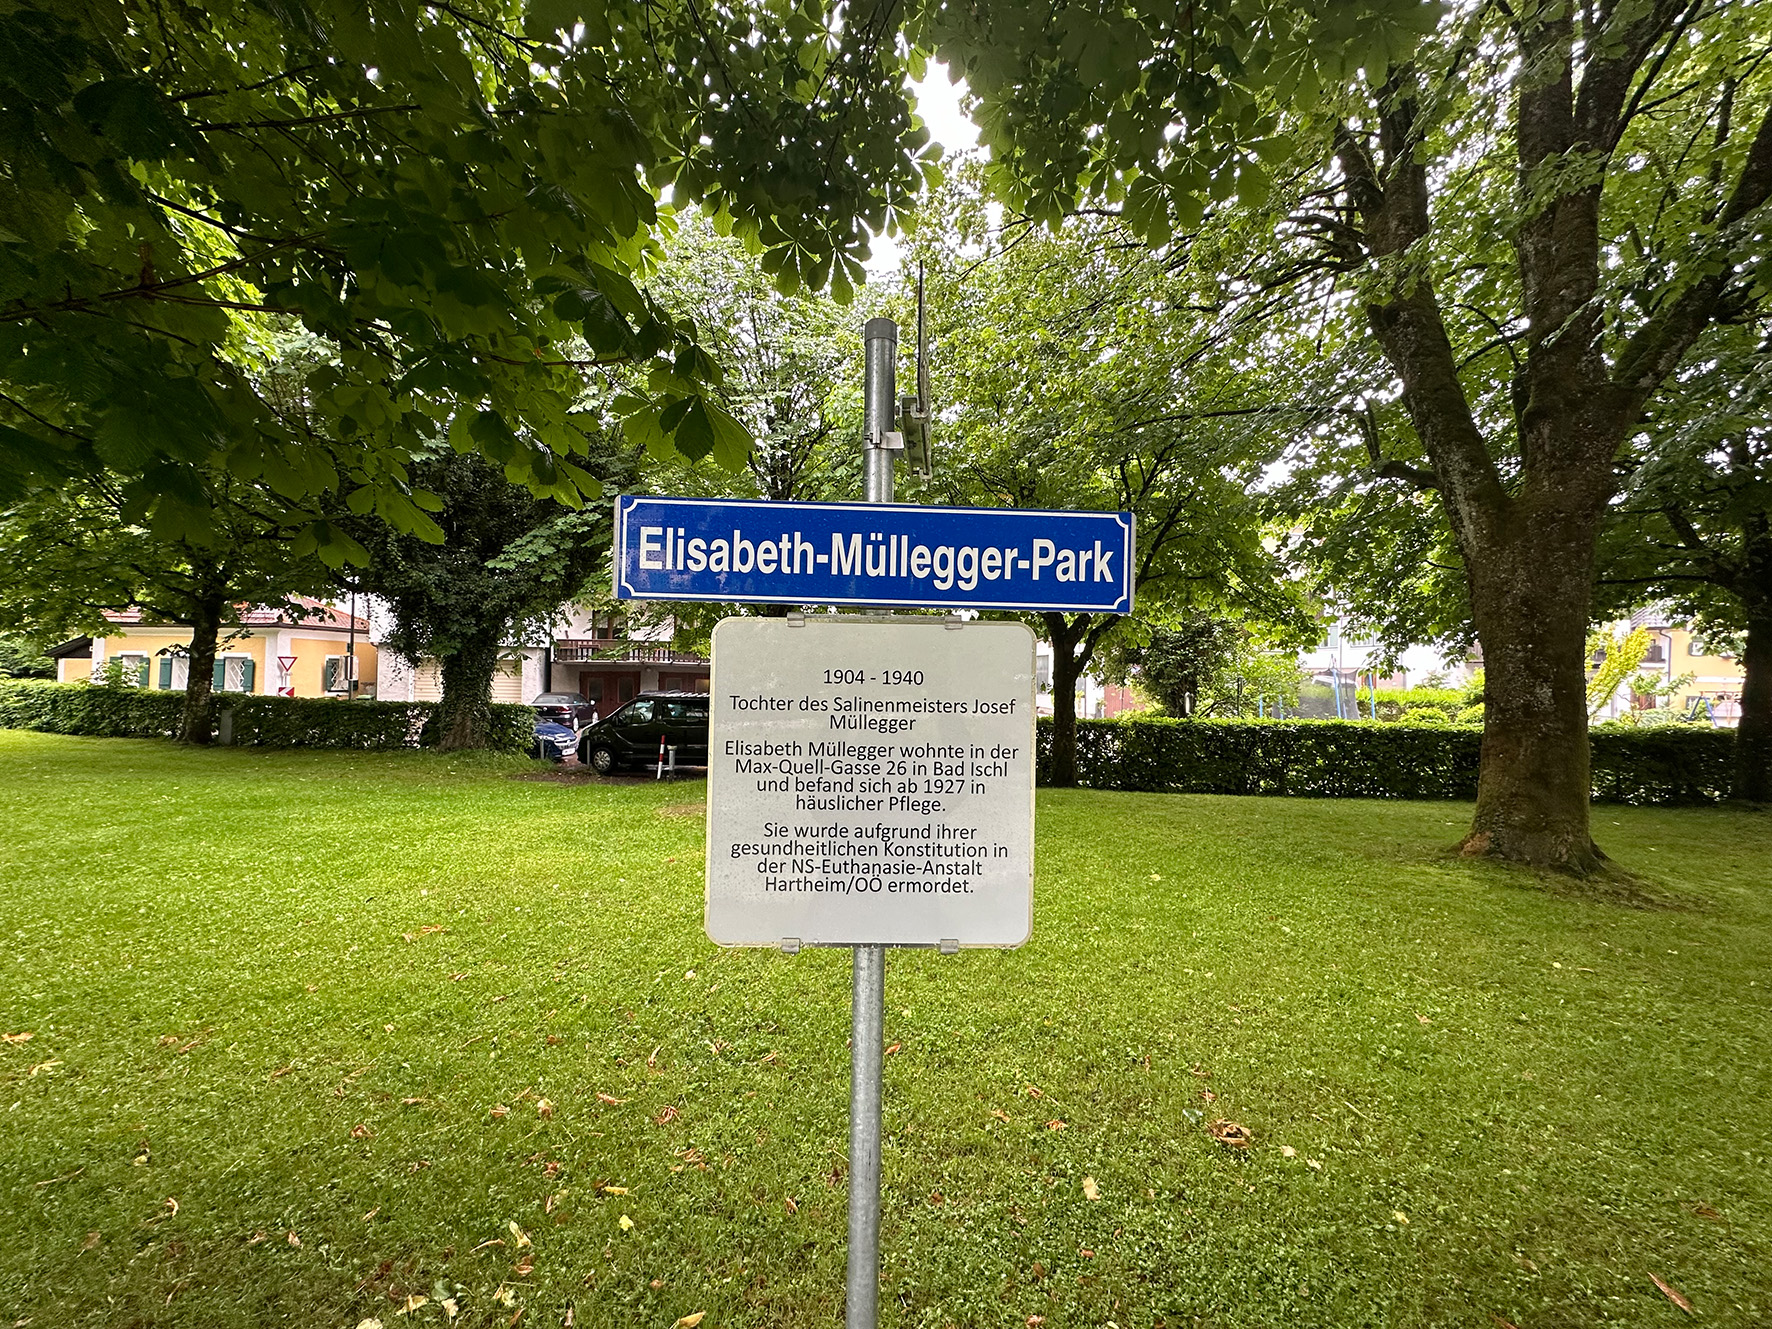 Park in Bad Ischl, kürzlich neu benannt nach Elisabeth Müllegger, die 1940 in Hartheim ermordet wurde